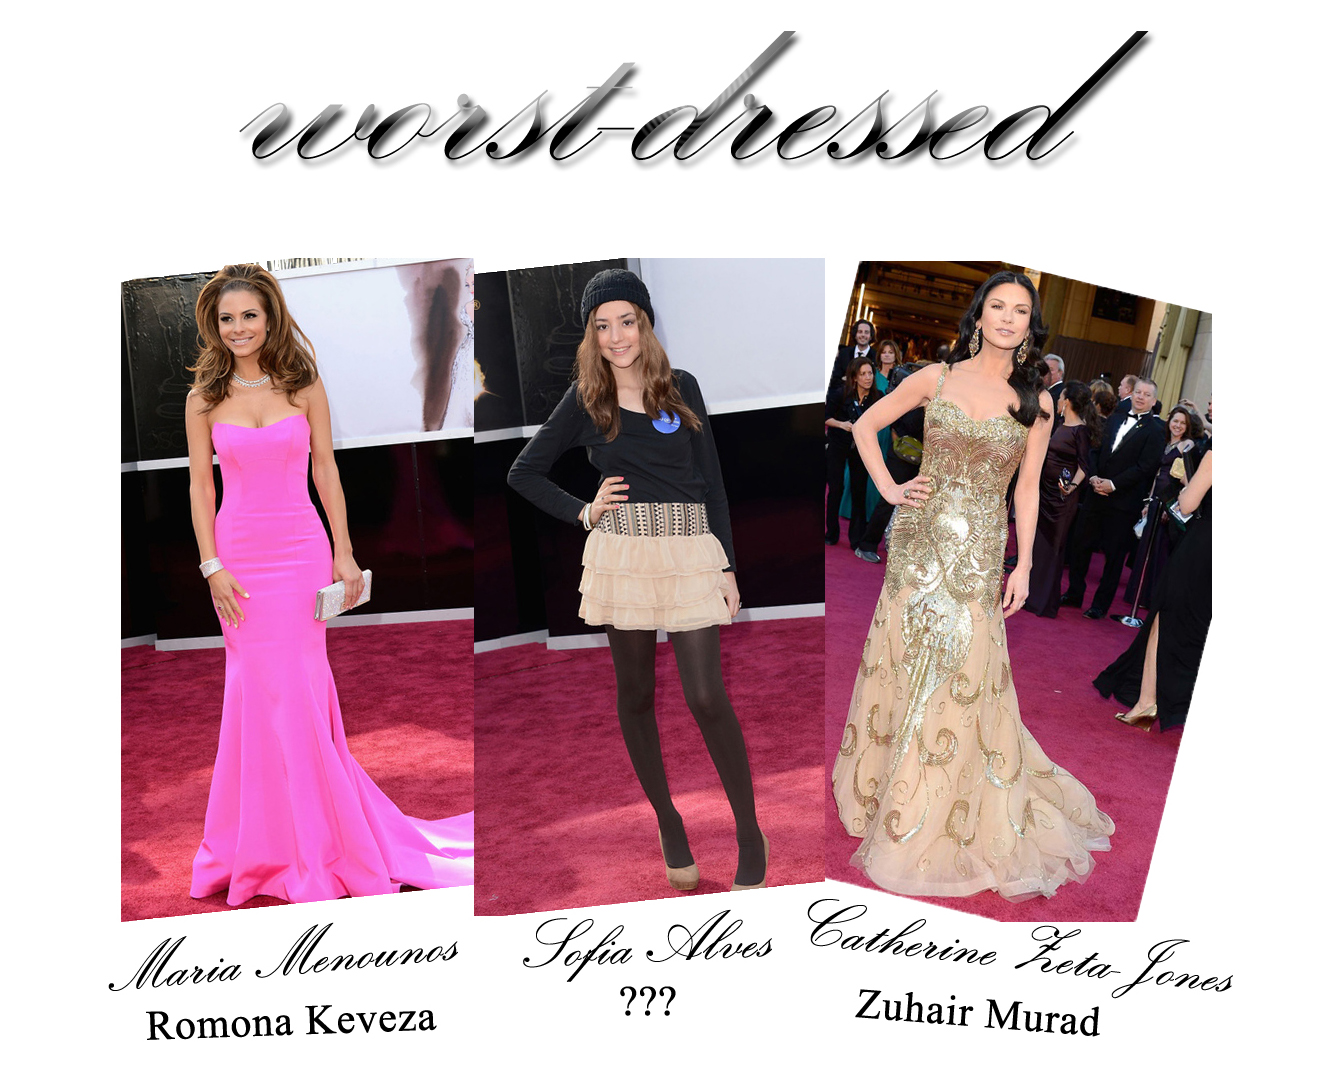 http://3.bp.blogspot.com/-Bl60i5jYCUk/US0ebVx_xOI/AAAAAAAABwk/10ea4ShaOCs/s1600/Oscars+2013+worst+dressed+red+carpet.jpg